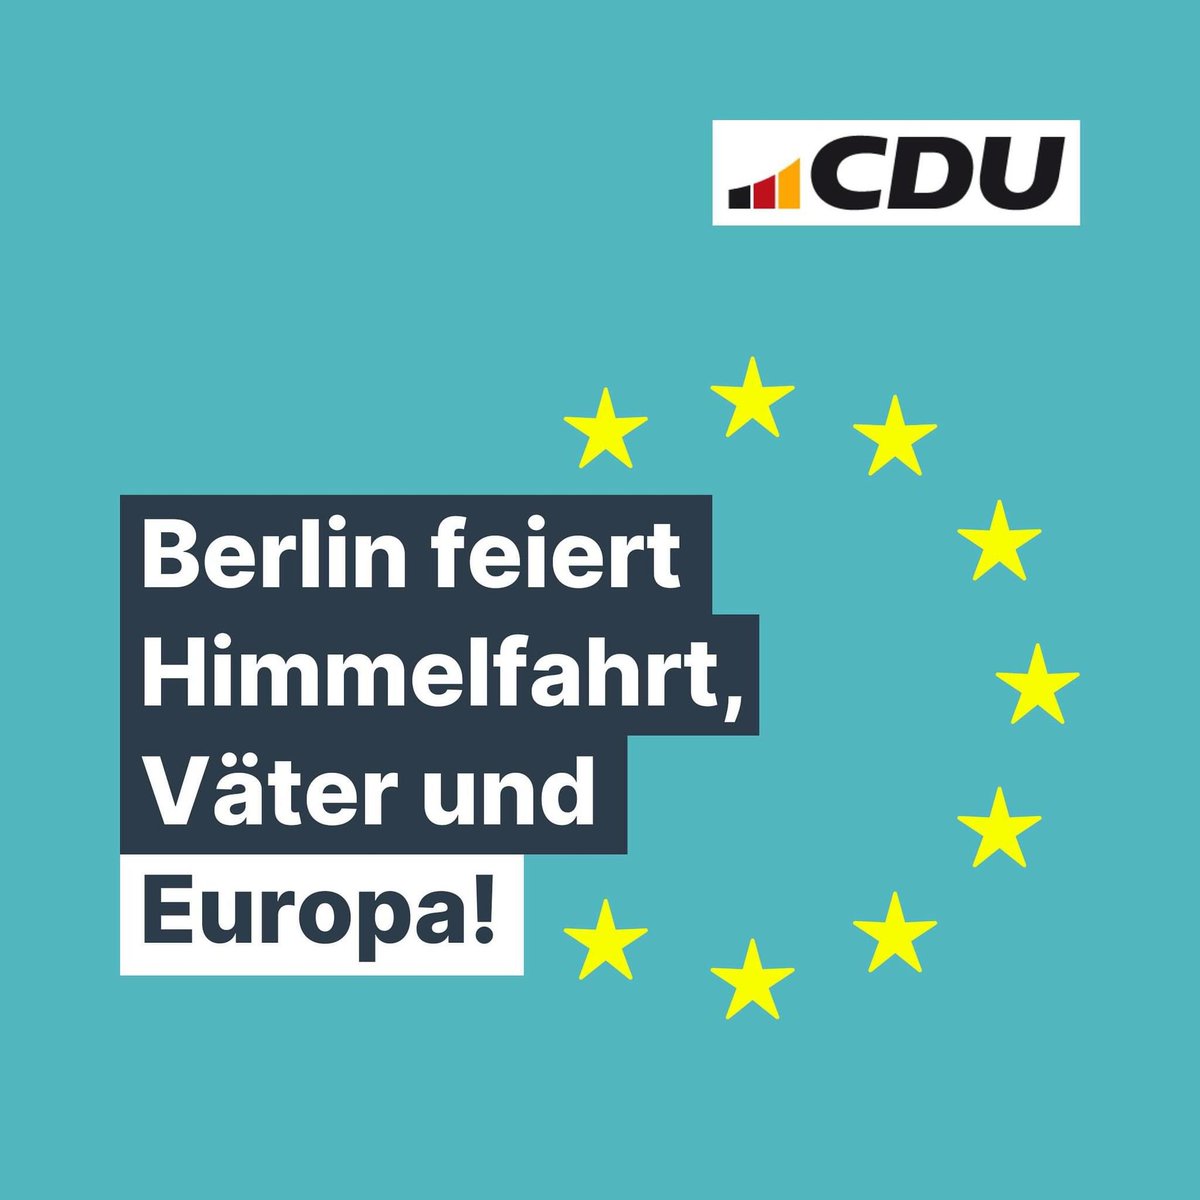 #Berlin feiert! Denn heute ist nicht nur #Himmelfahrt & #Vatertag sondern auch #Europatag! Heute vor 74 Jahren wurde die Idee zur EU formuliert. Damit es mit guten europäischen Ideen weitergeht: Am 9. Juni bei der Europawahl @cdu wählen. #Berlin #EuropaBrauchtDich. ⭐️